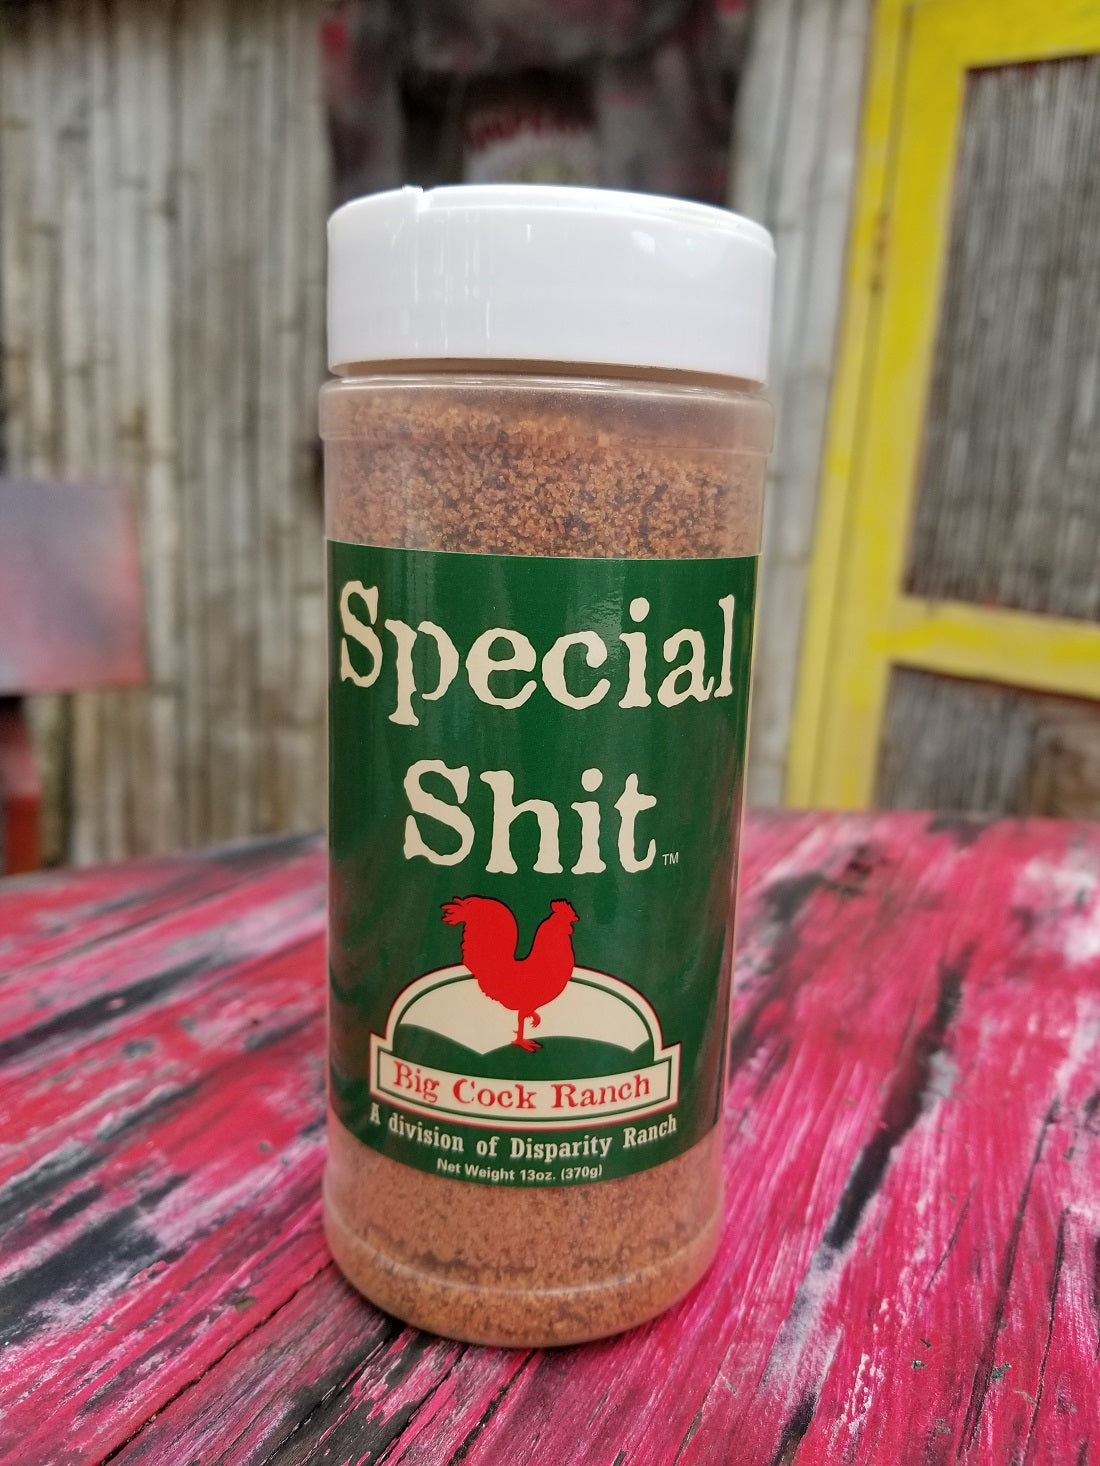 SpecialShit Seasonings